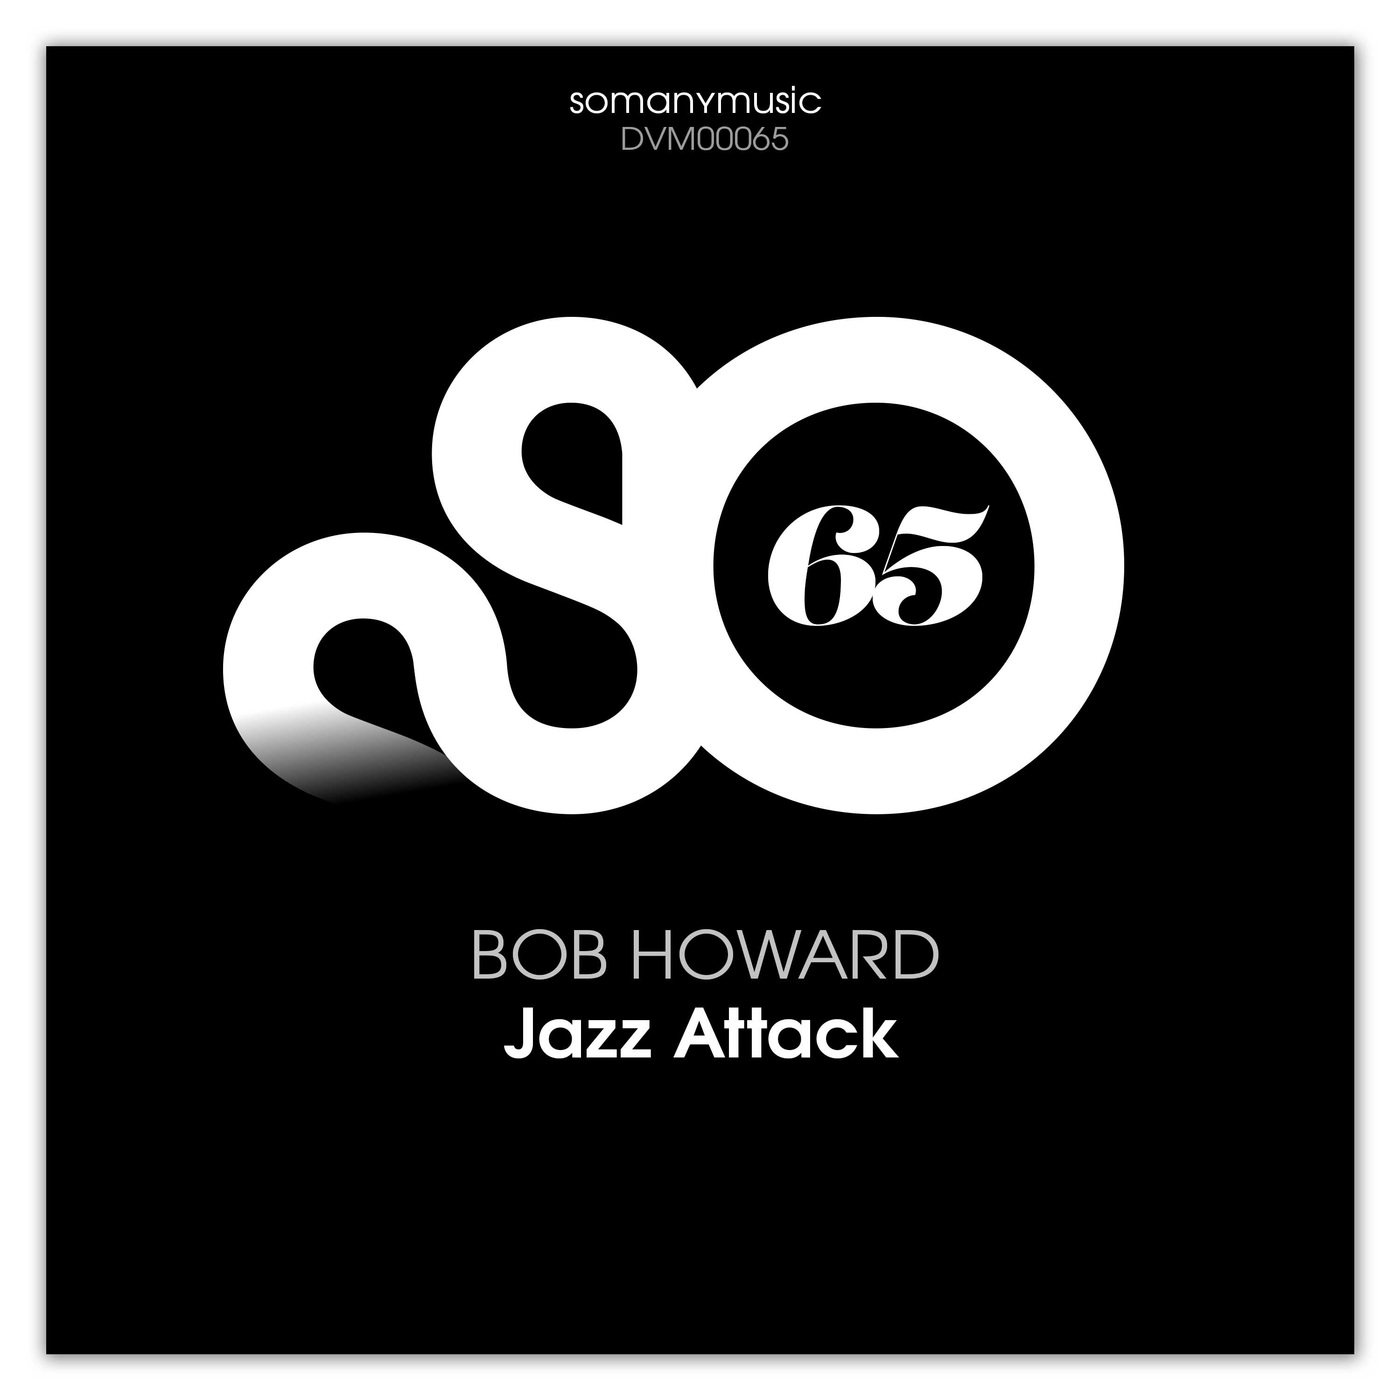 Bob Howard - Jazz Attack / somanymusic